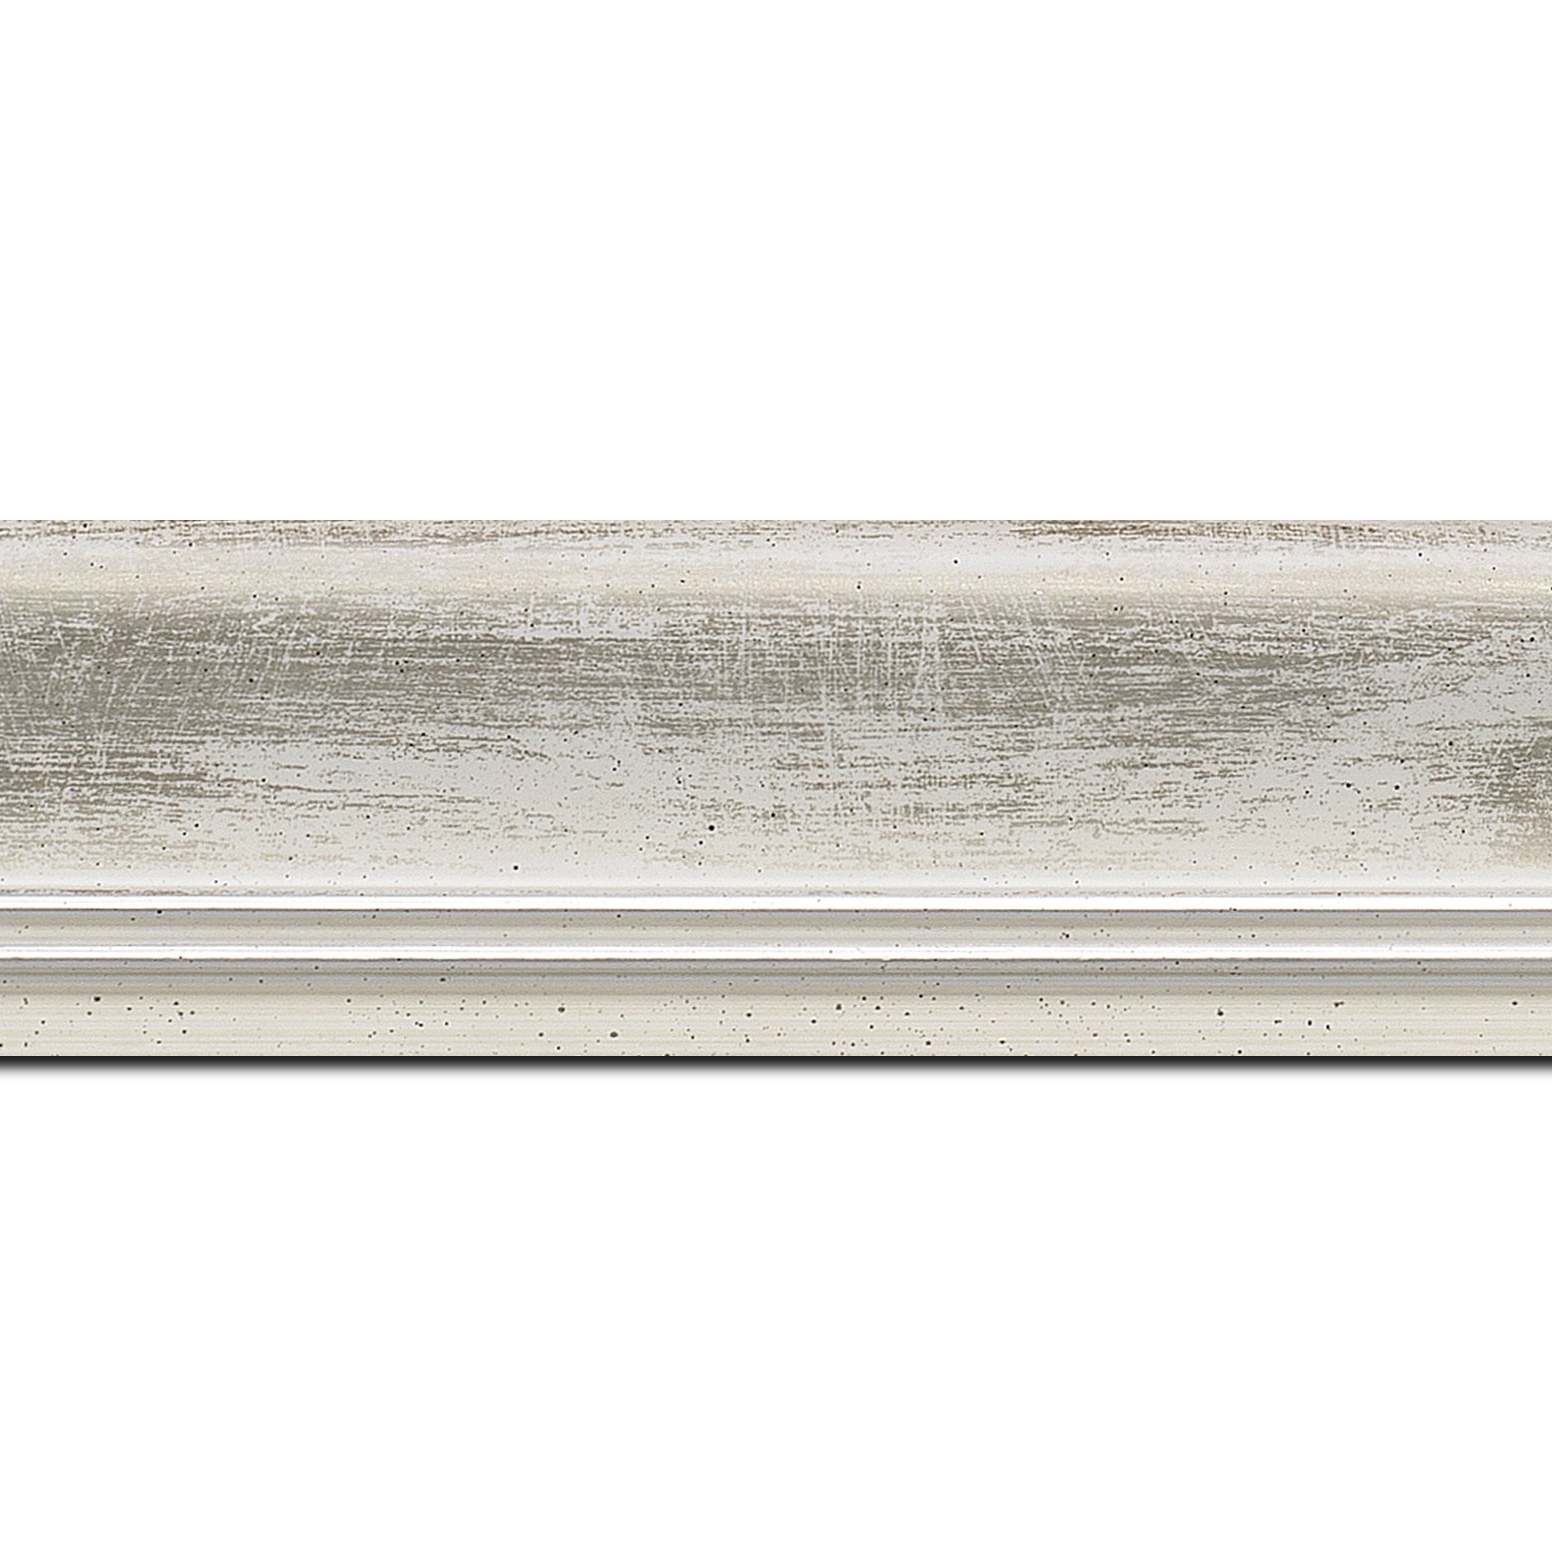 Baguette longueur 1.40m bois profil incurvé largeur 5.7cm de couleur blanc fond argent marie louise blanche mouchetée filet argent intégré